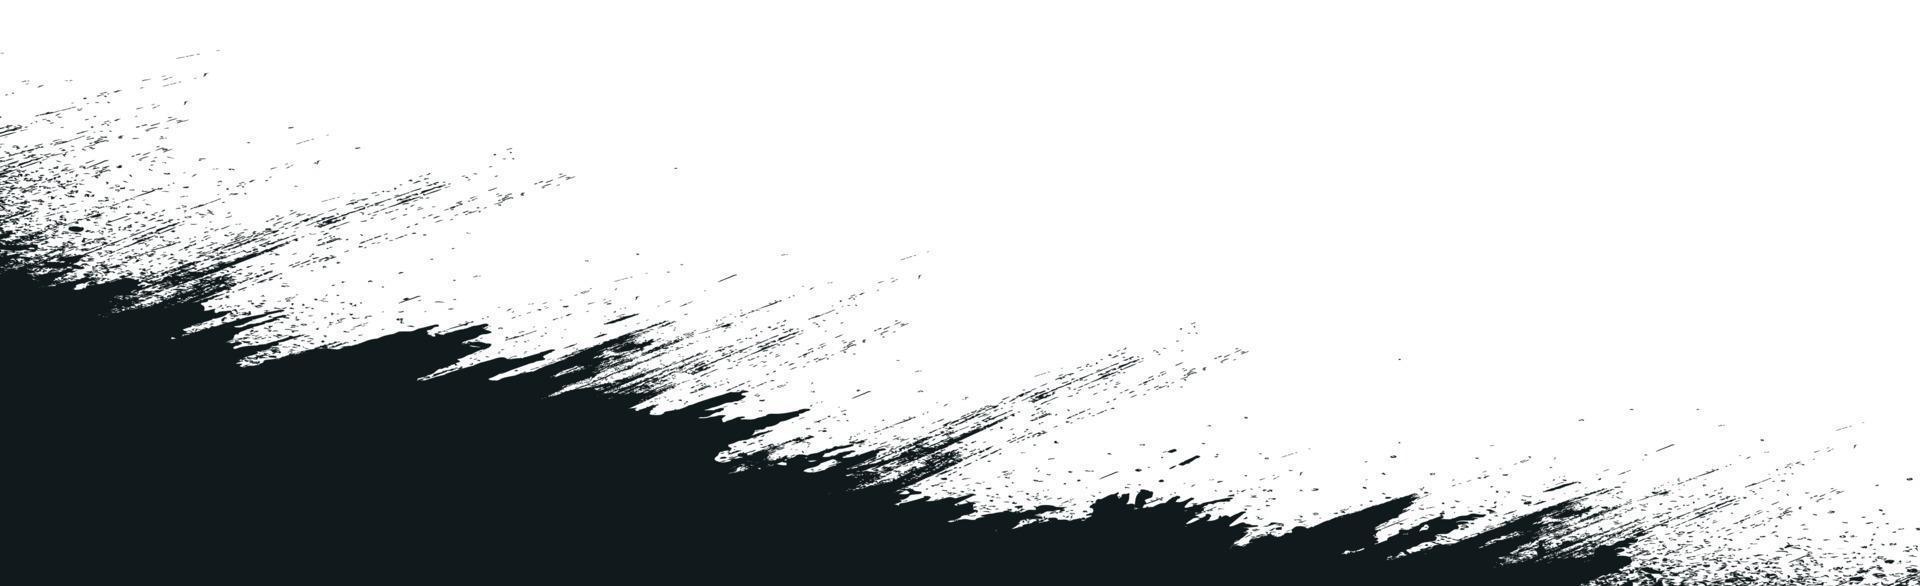 grunge lignes noires et points sur fond blanc - illustration vectorielle vecteur